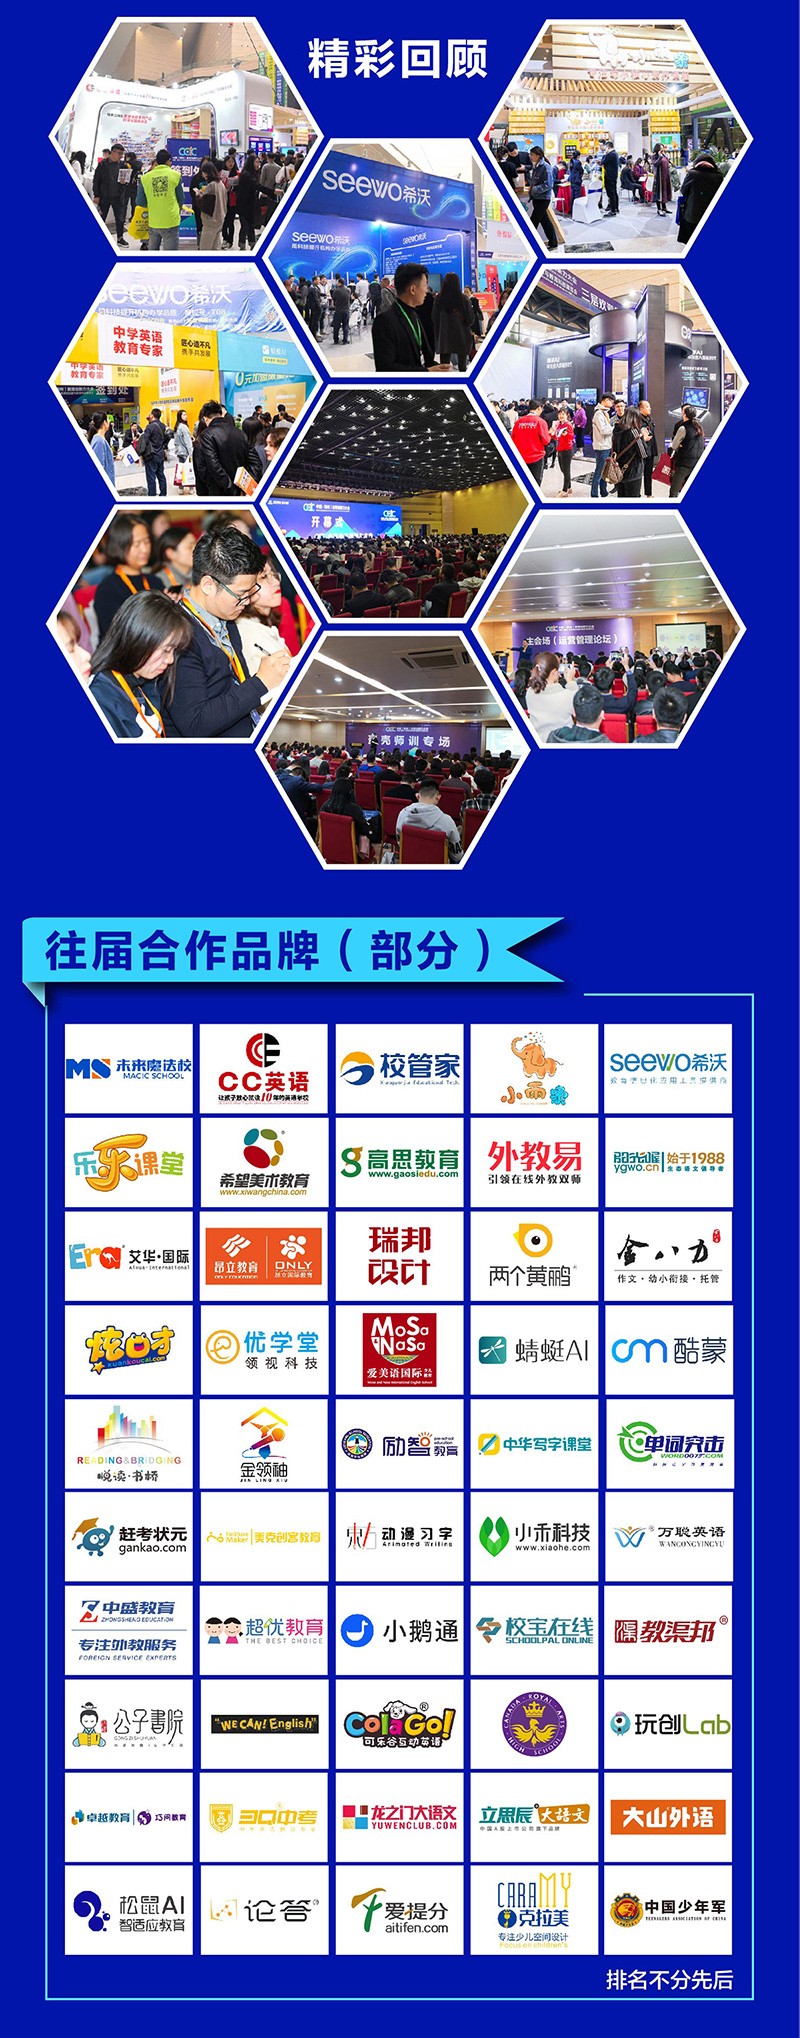 2020中国教育加盟与教育科技展览会